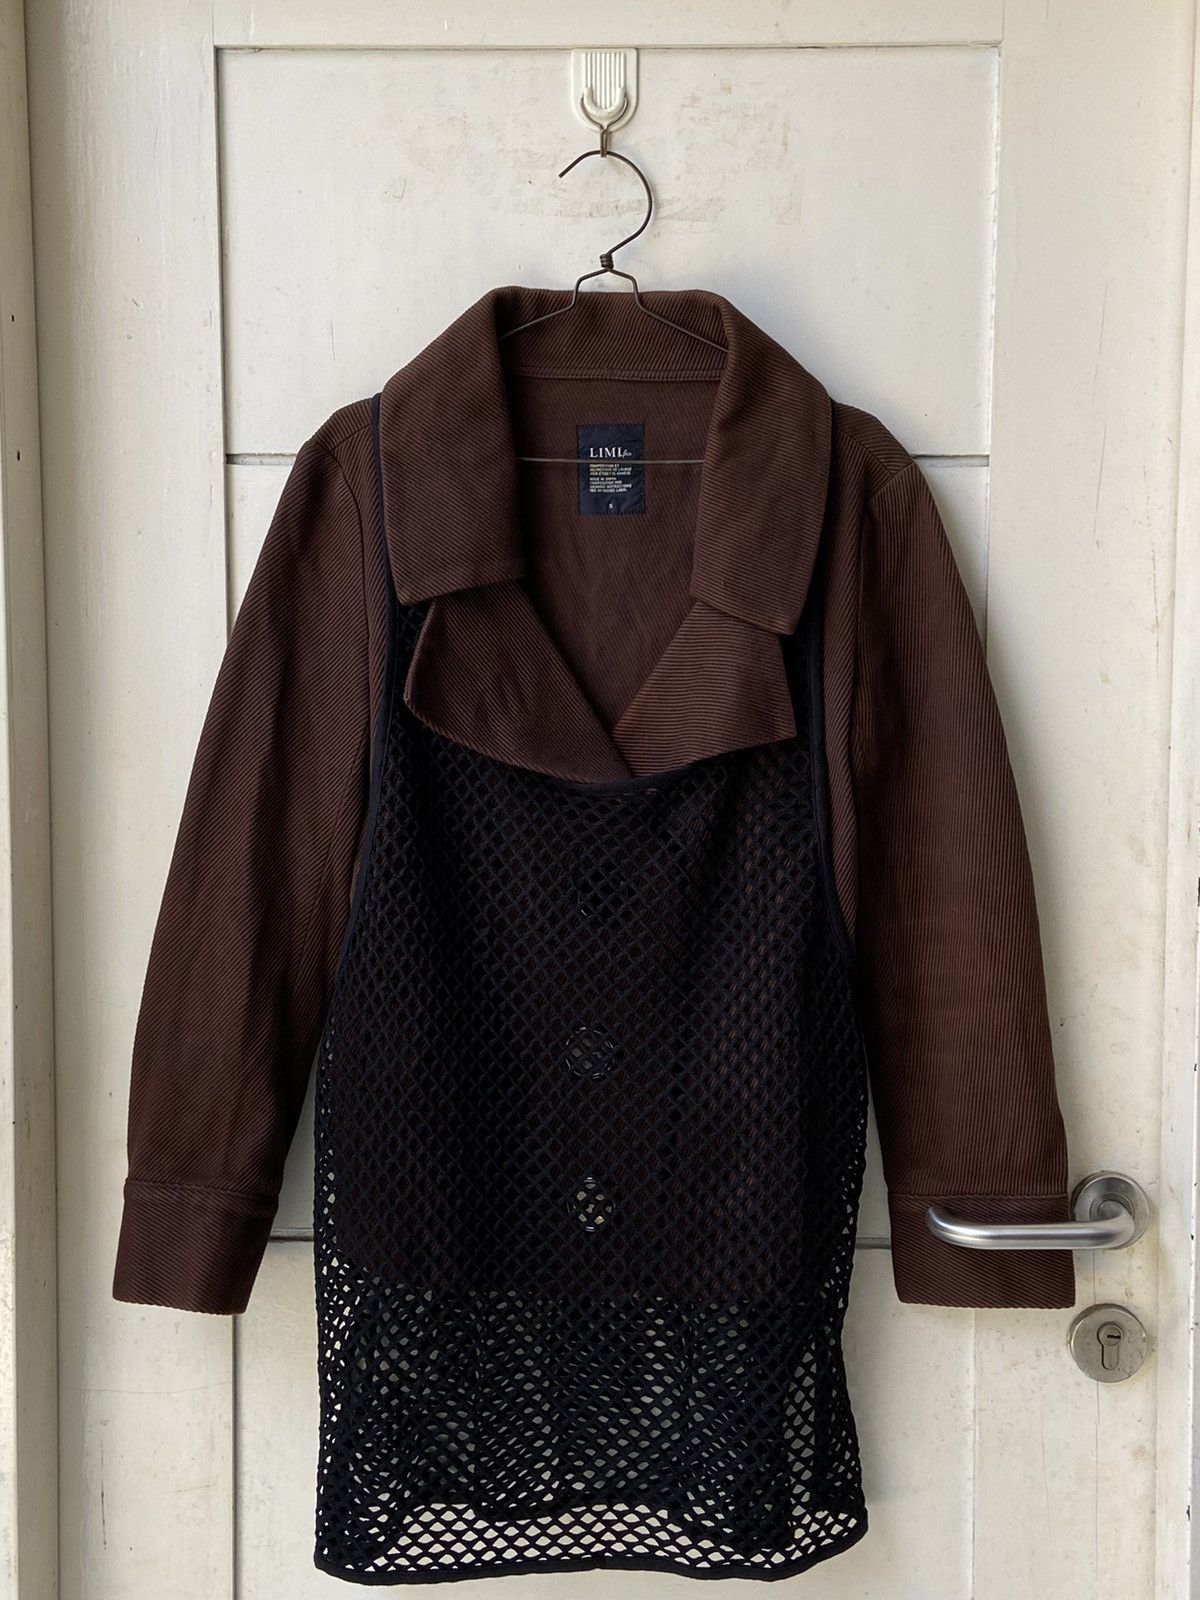 Yohji Yamamoto LIMI FEU Brown Blazer Vest Size US S / EU 44-46 / 1 - 1 Preview